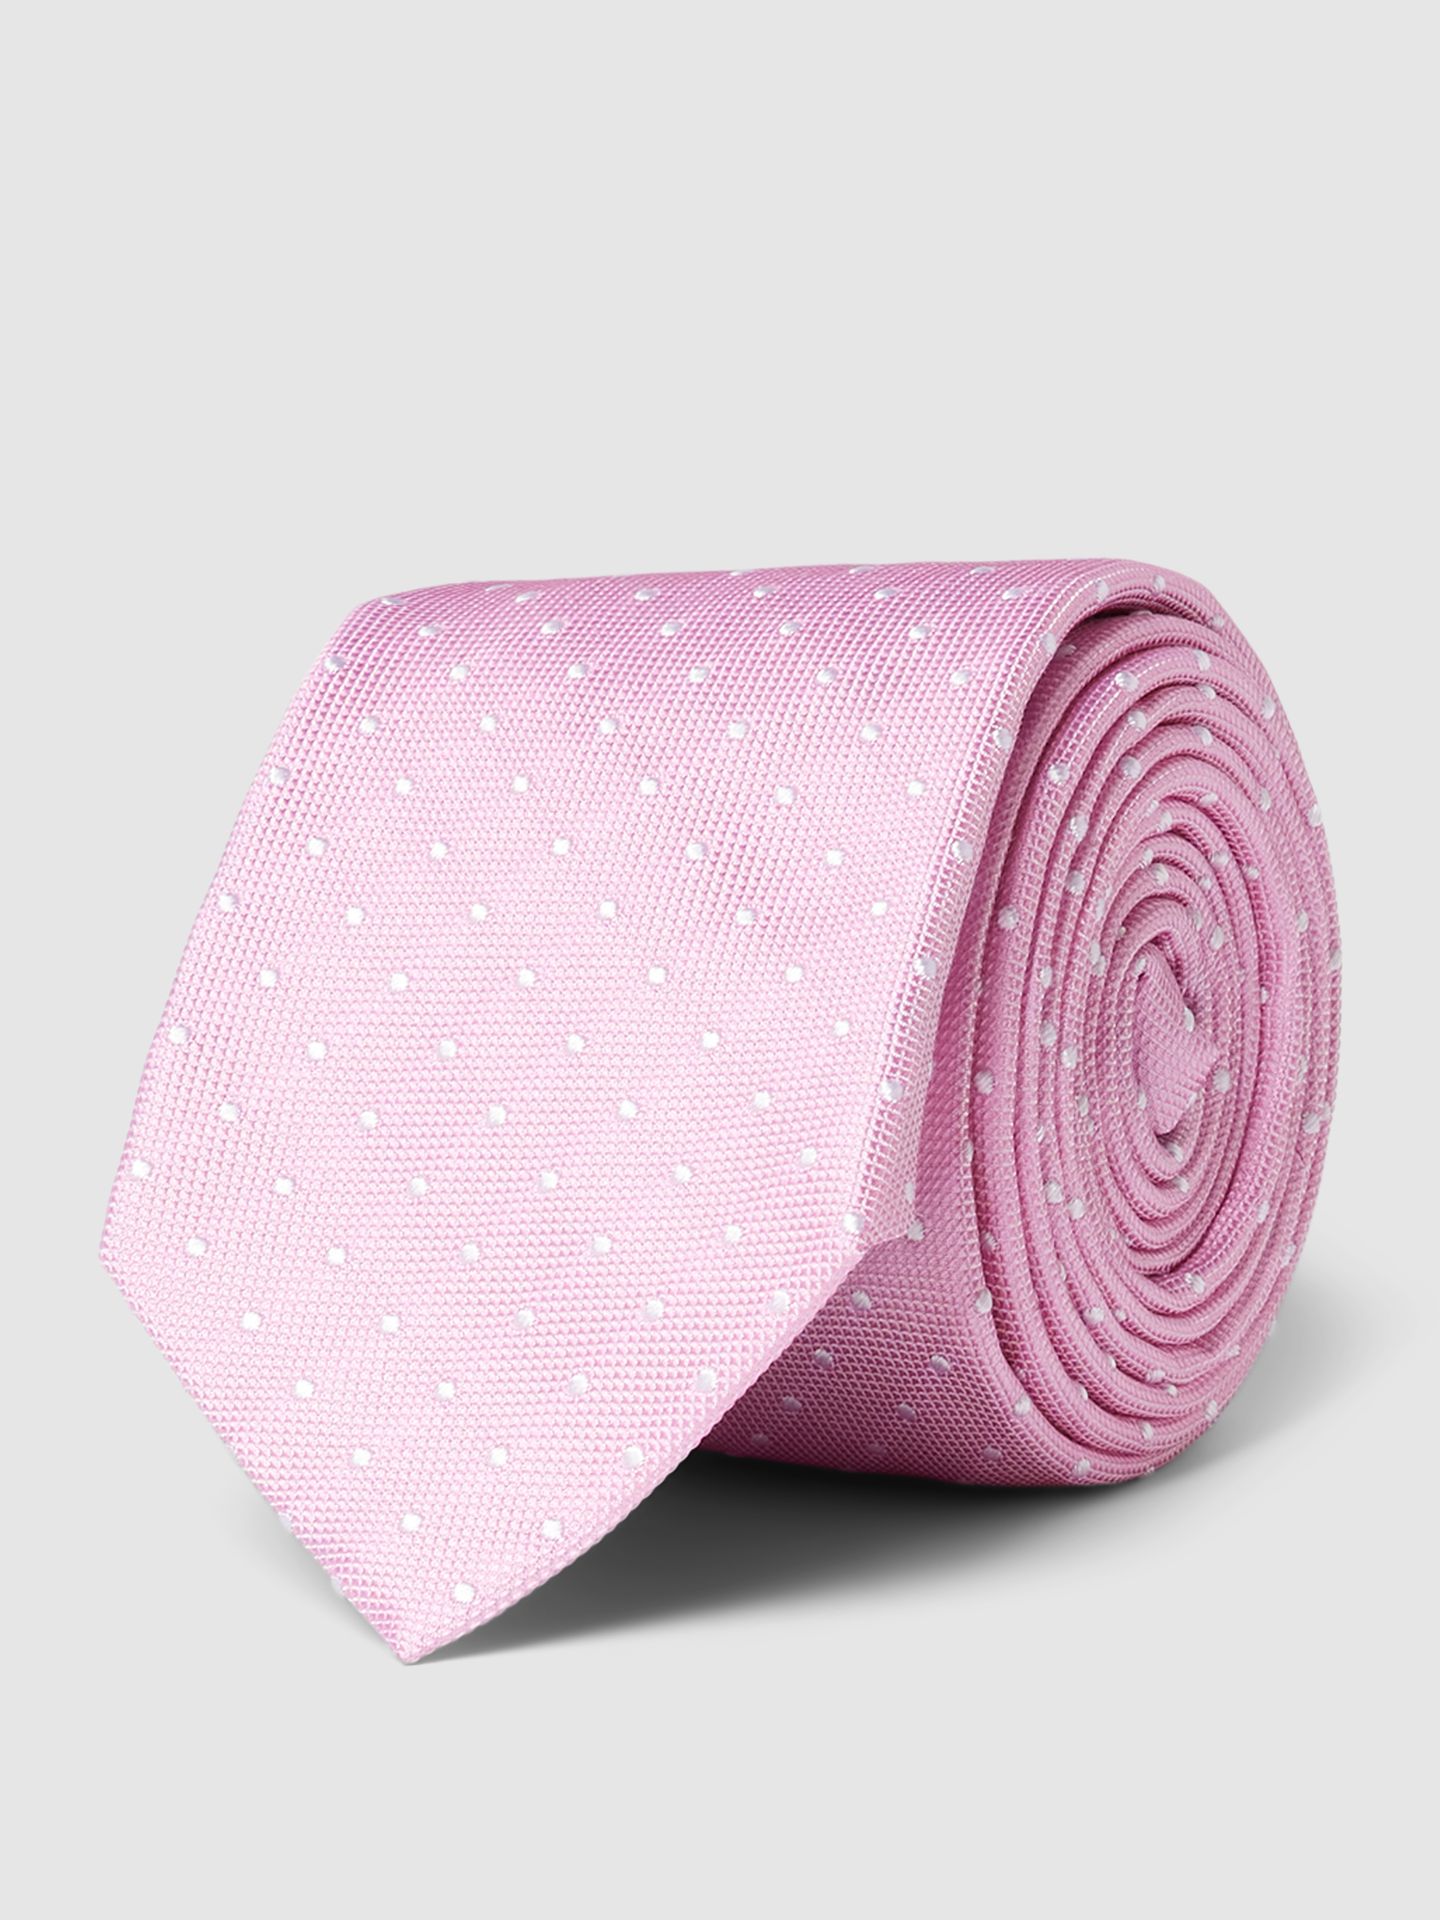 Krawat jedwabny z drobnym wzorem na całej powierzchni